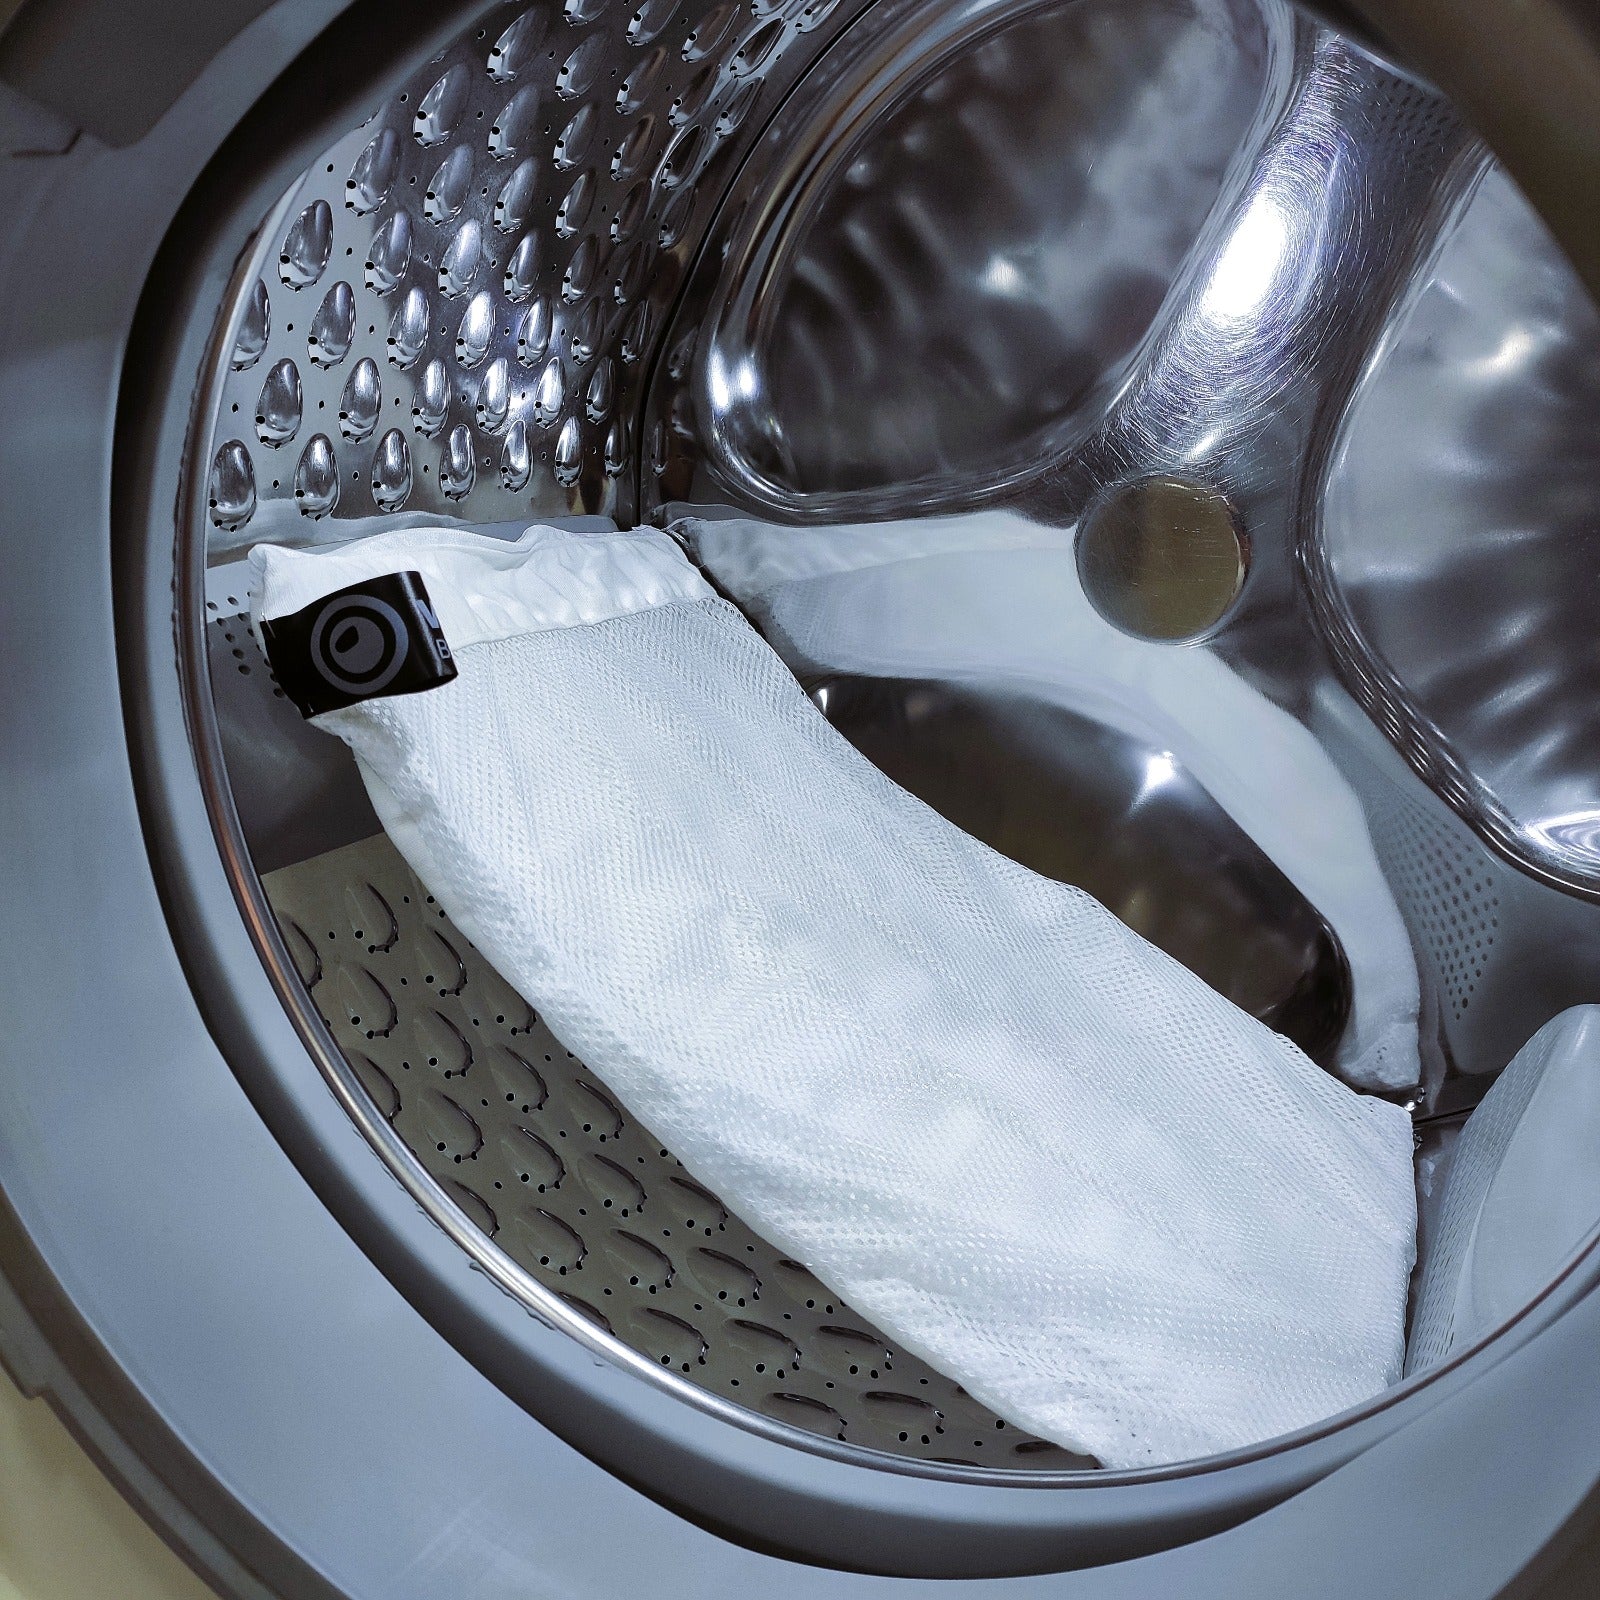 #Washobag, bolsa de lavandería para lavar ropa delicada en la lavadora